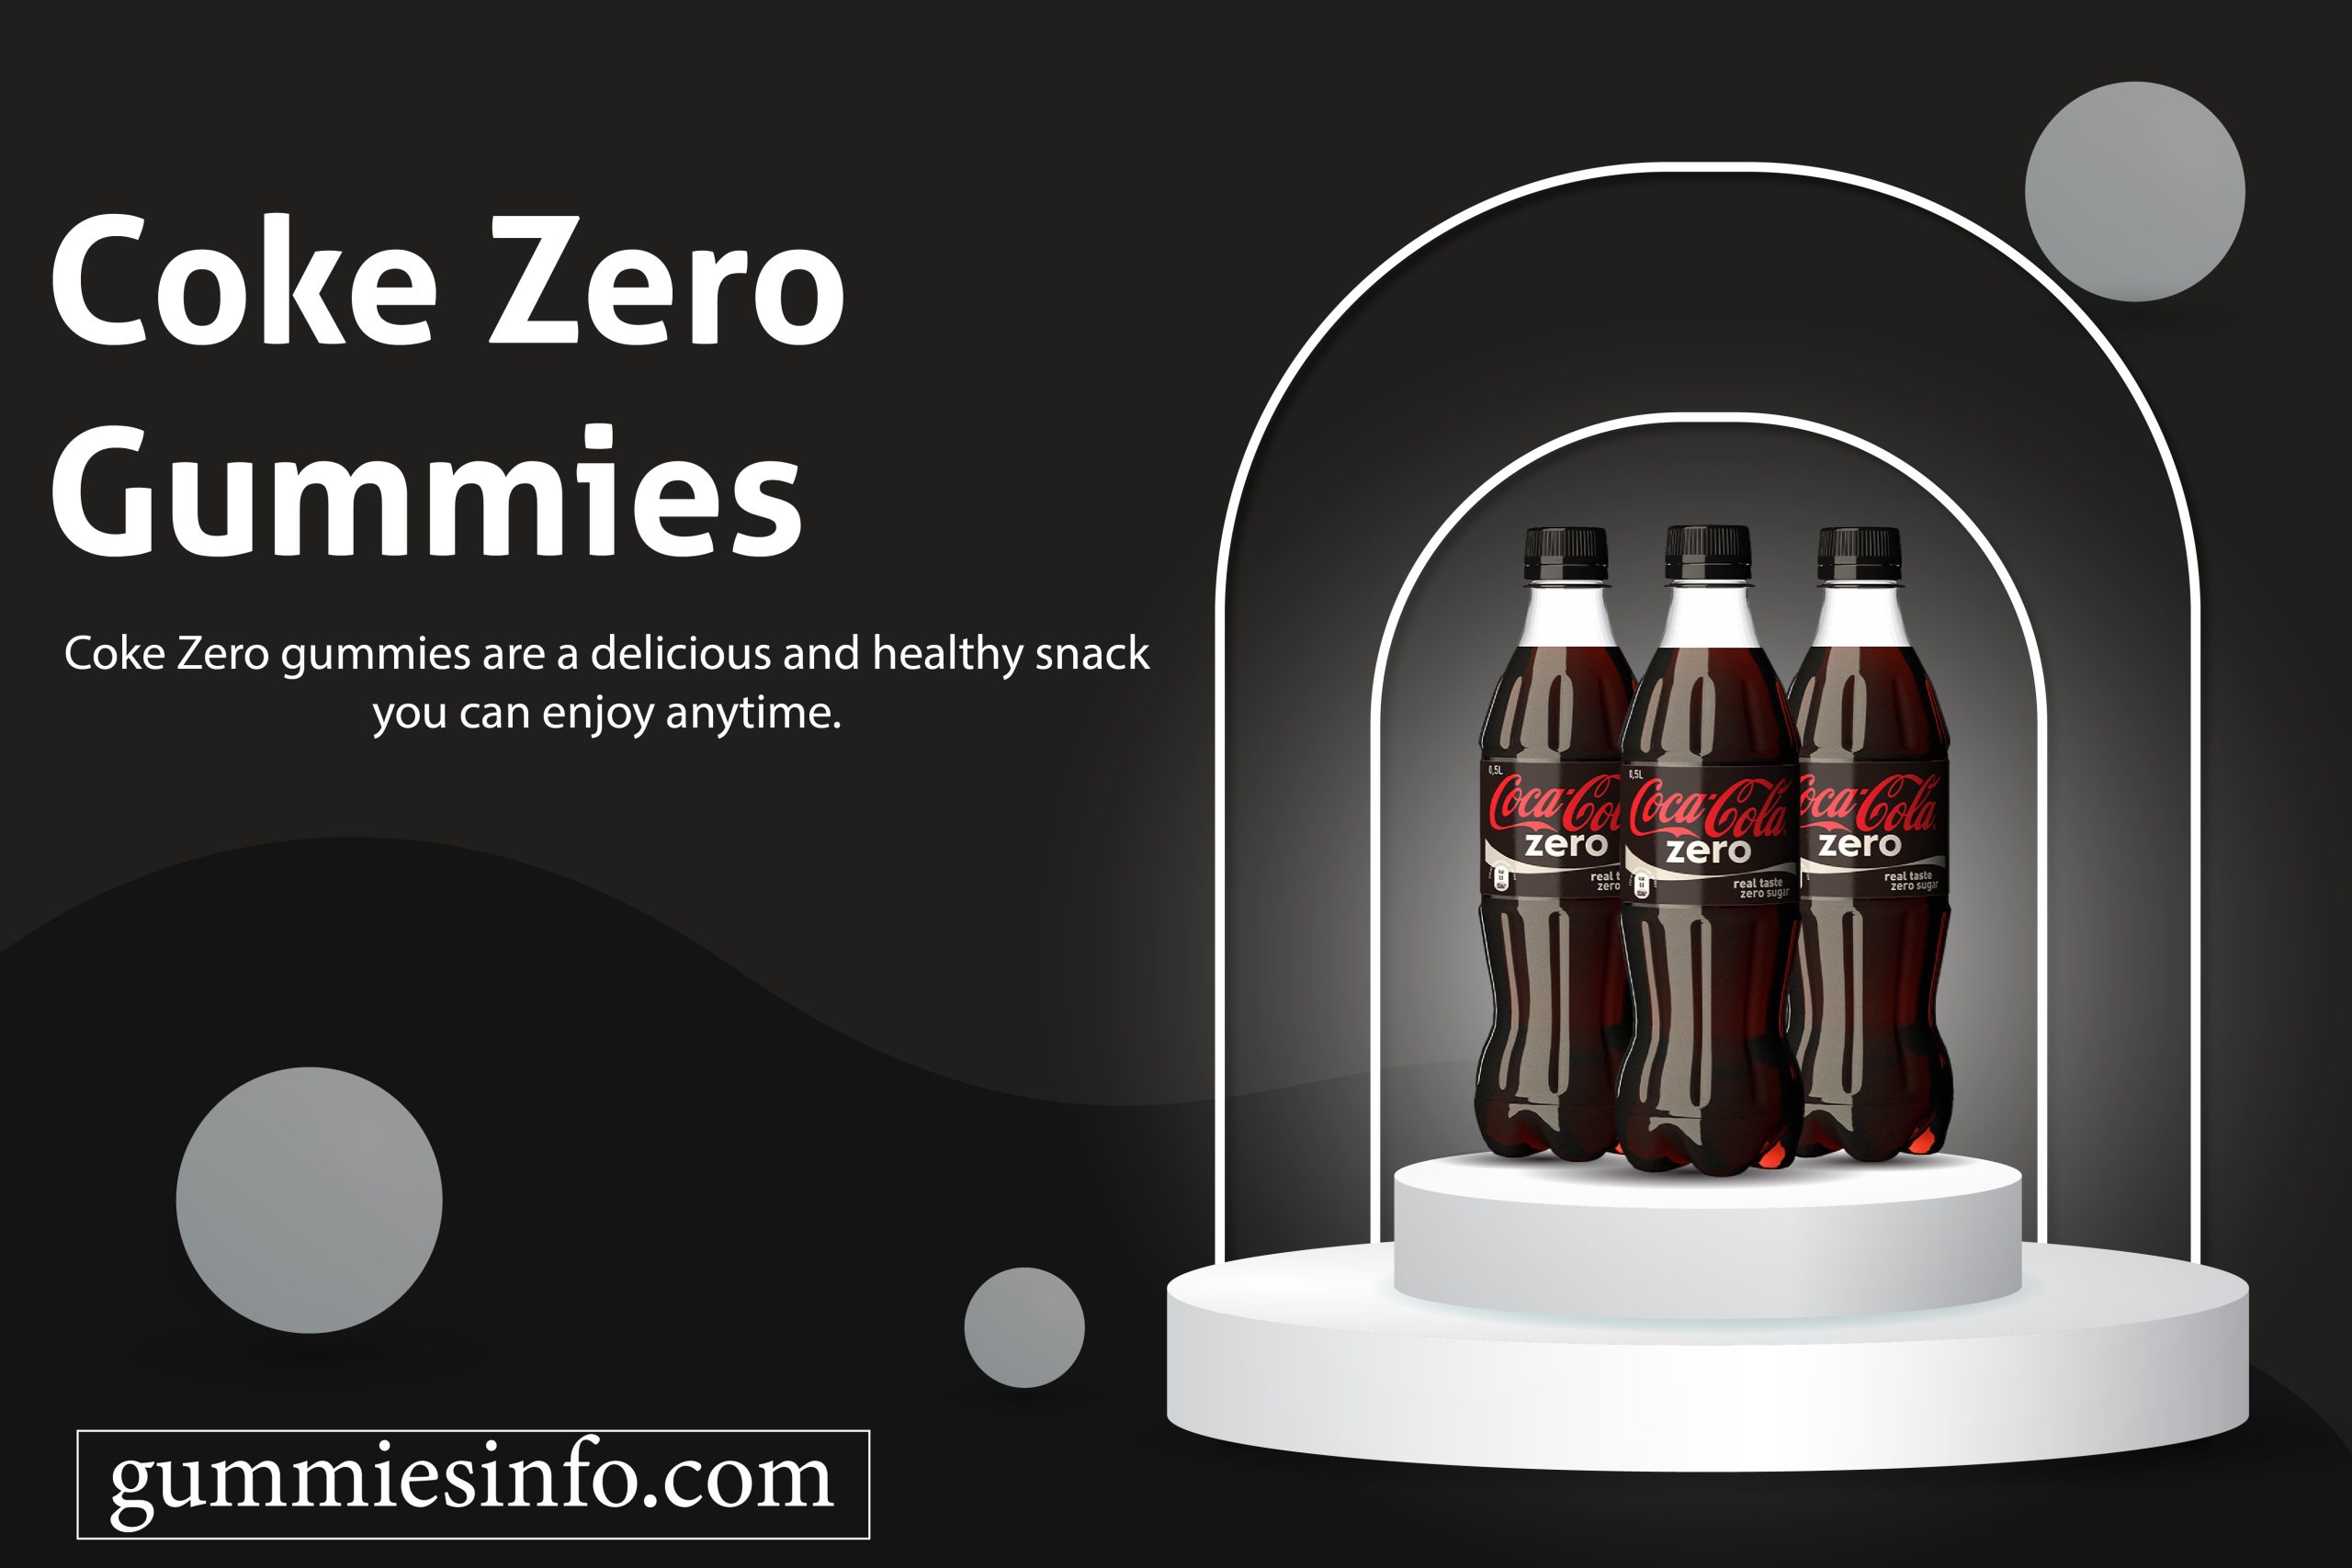 Coke Zero Gummies